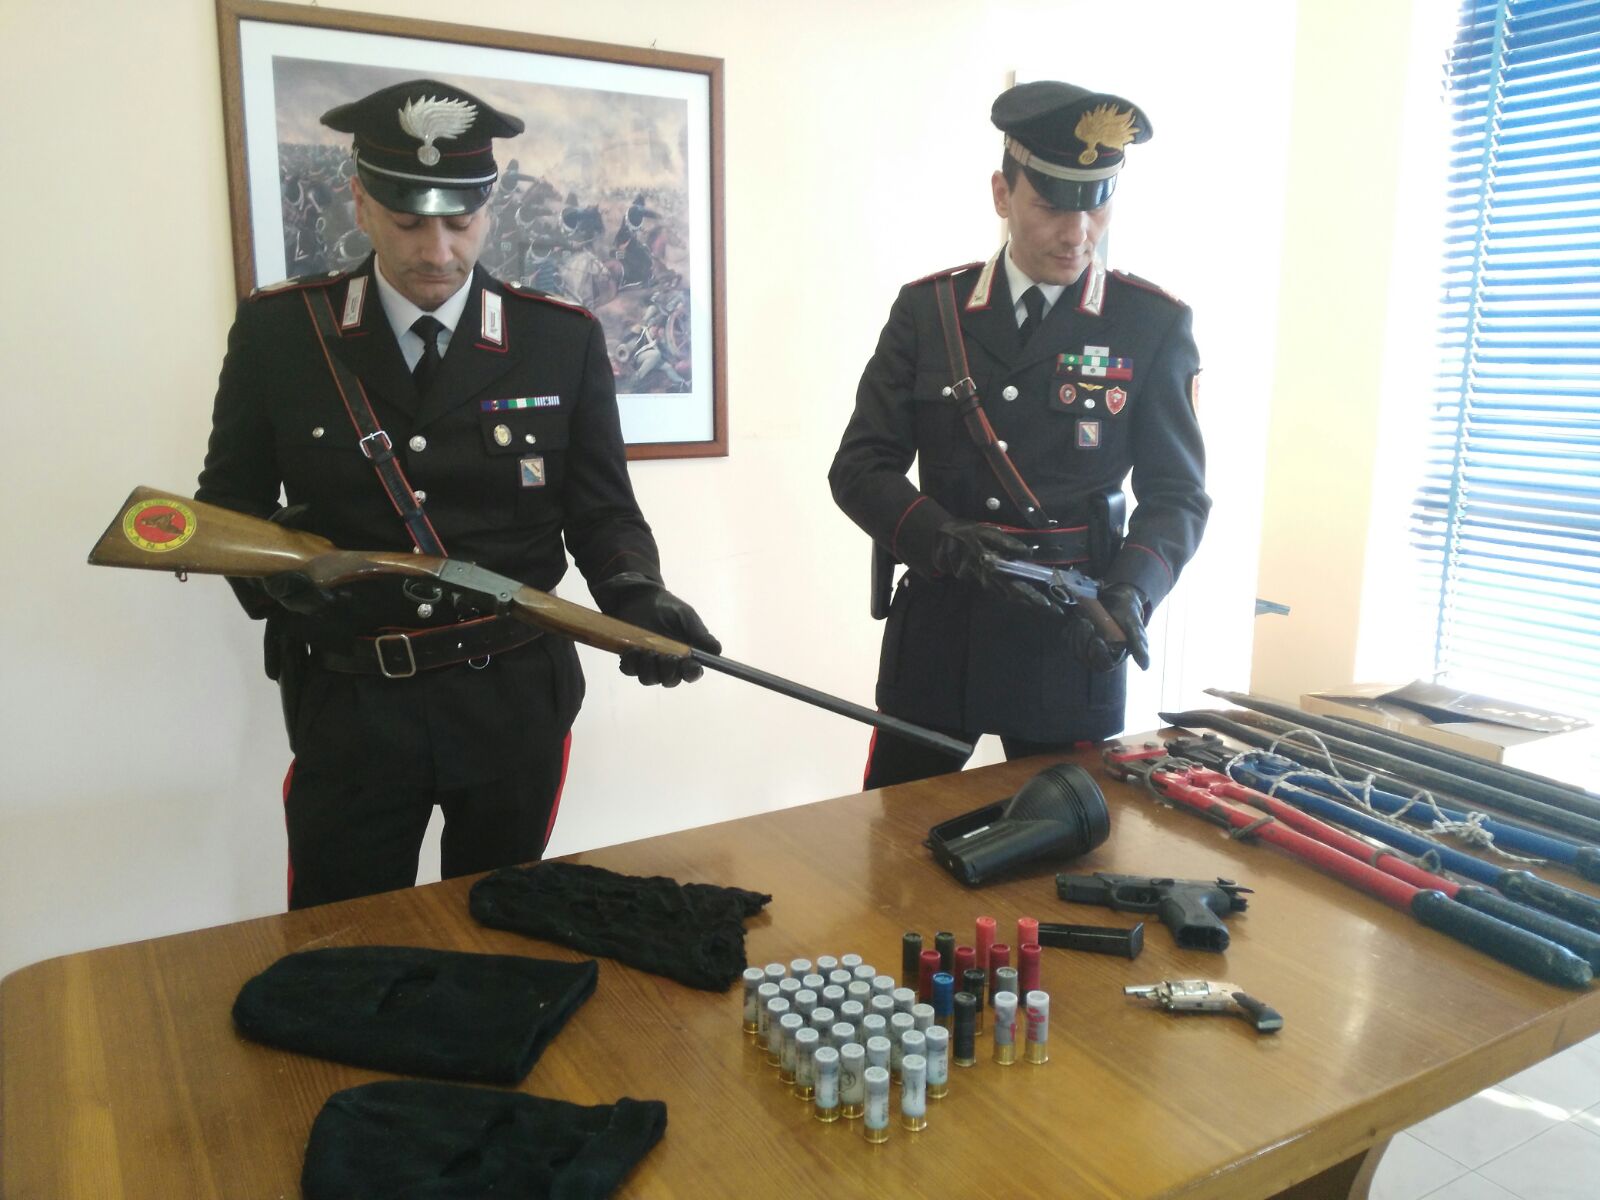 Sant’Agata de’ Goti| Armi clandestine e ricettazione, Carabinieri arrestano 44enne